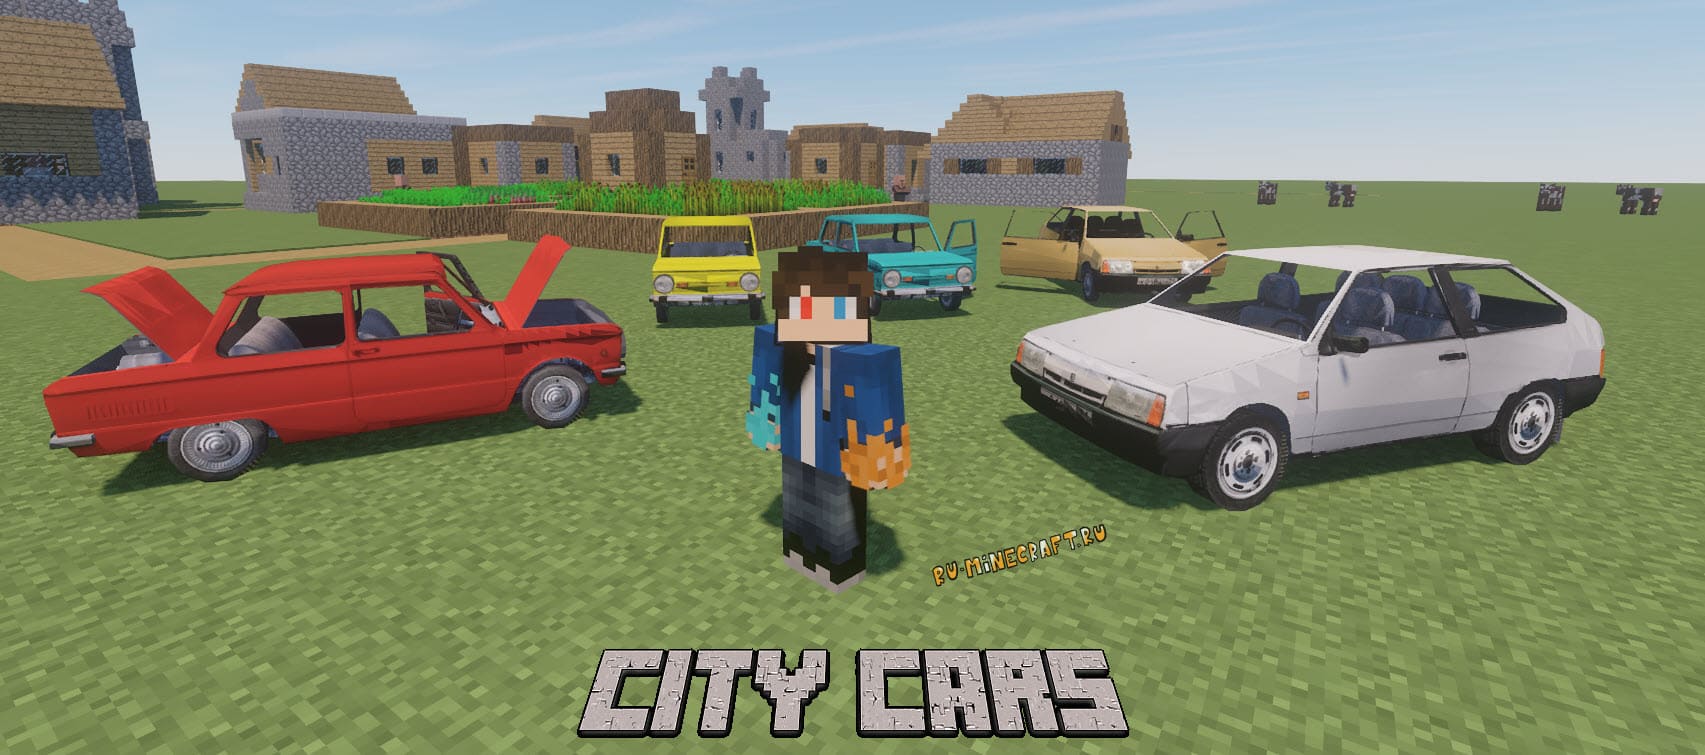 City Cars - Русские Машины Для Симулятора Транспорта [1.16.5.